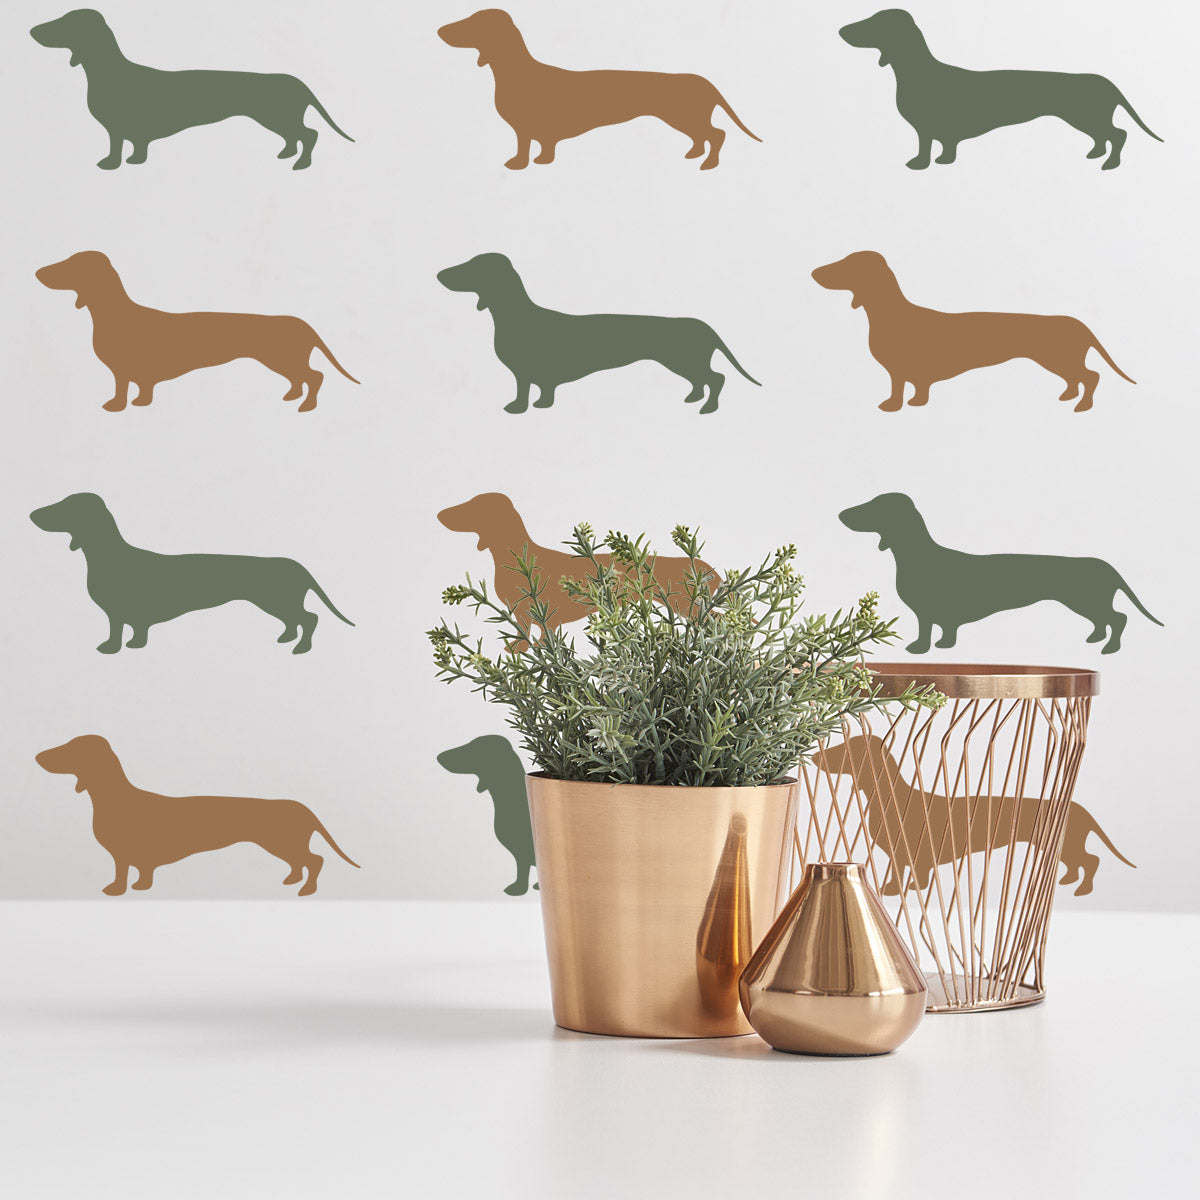 Dachshund Dog Stencil Set on Wall